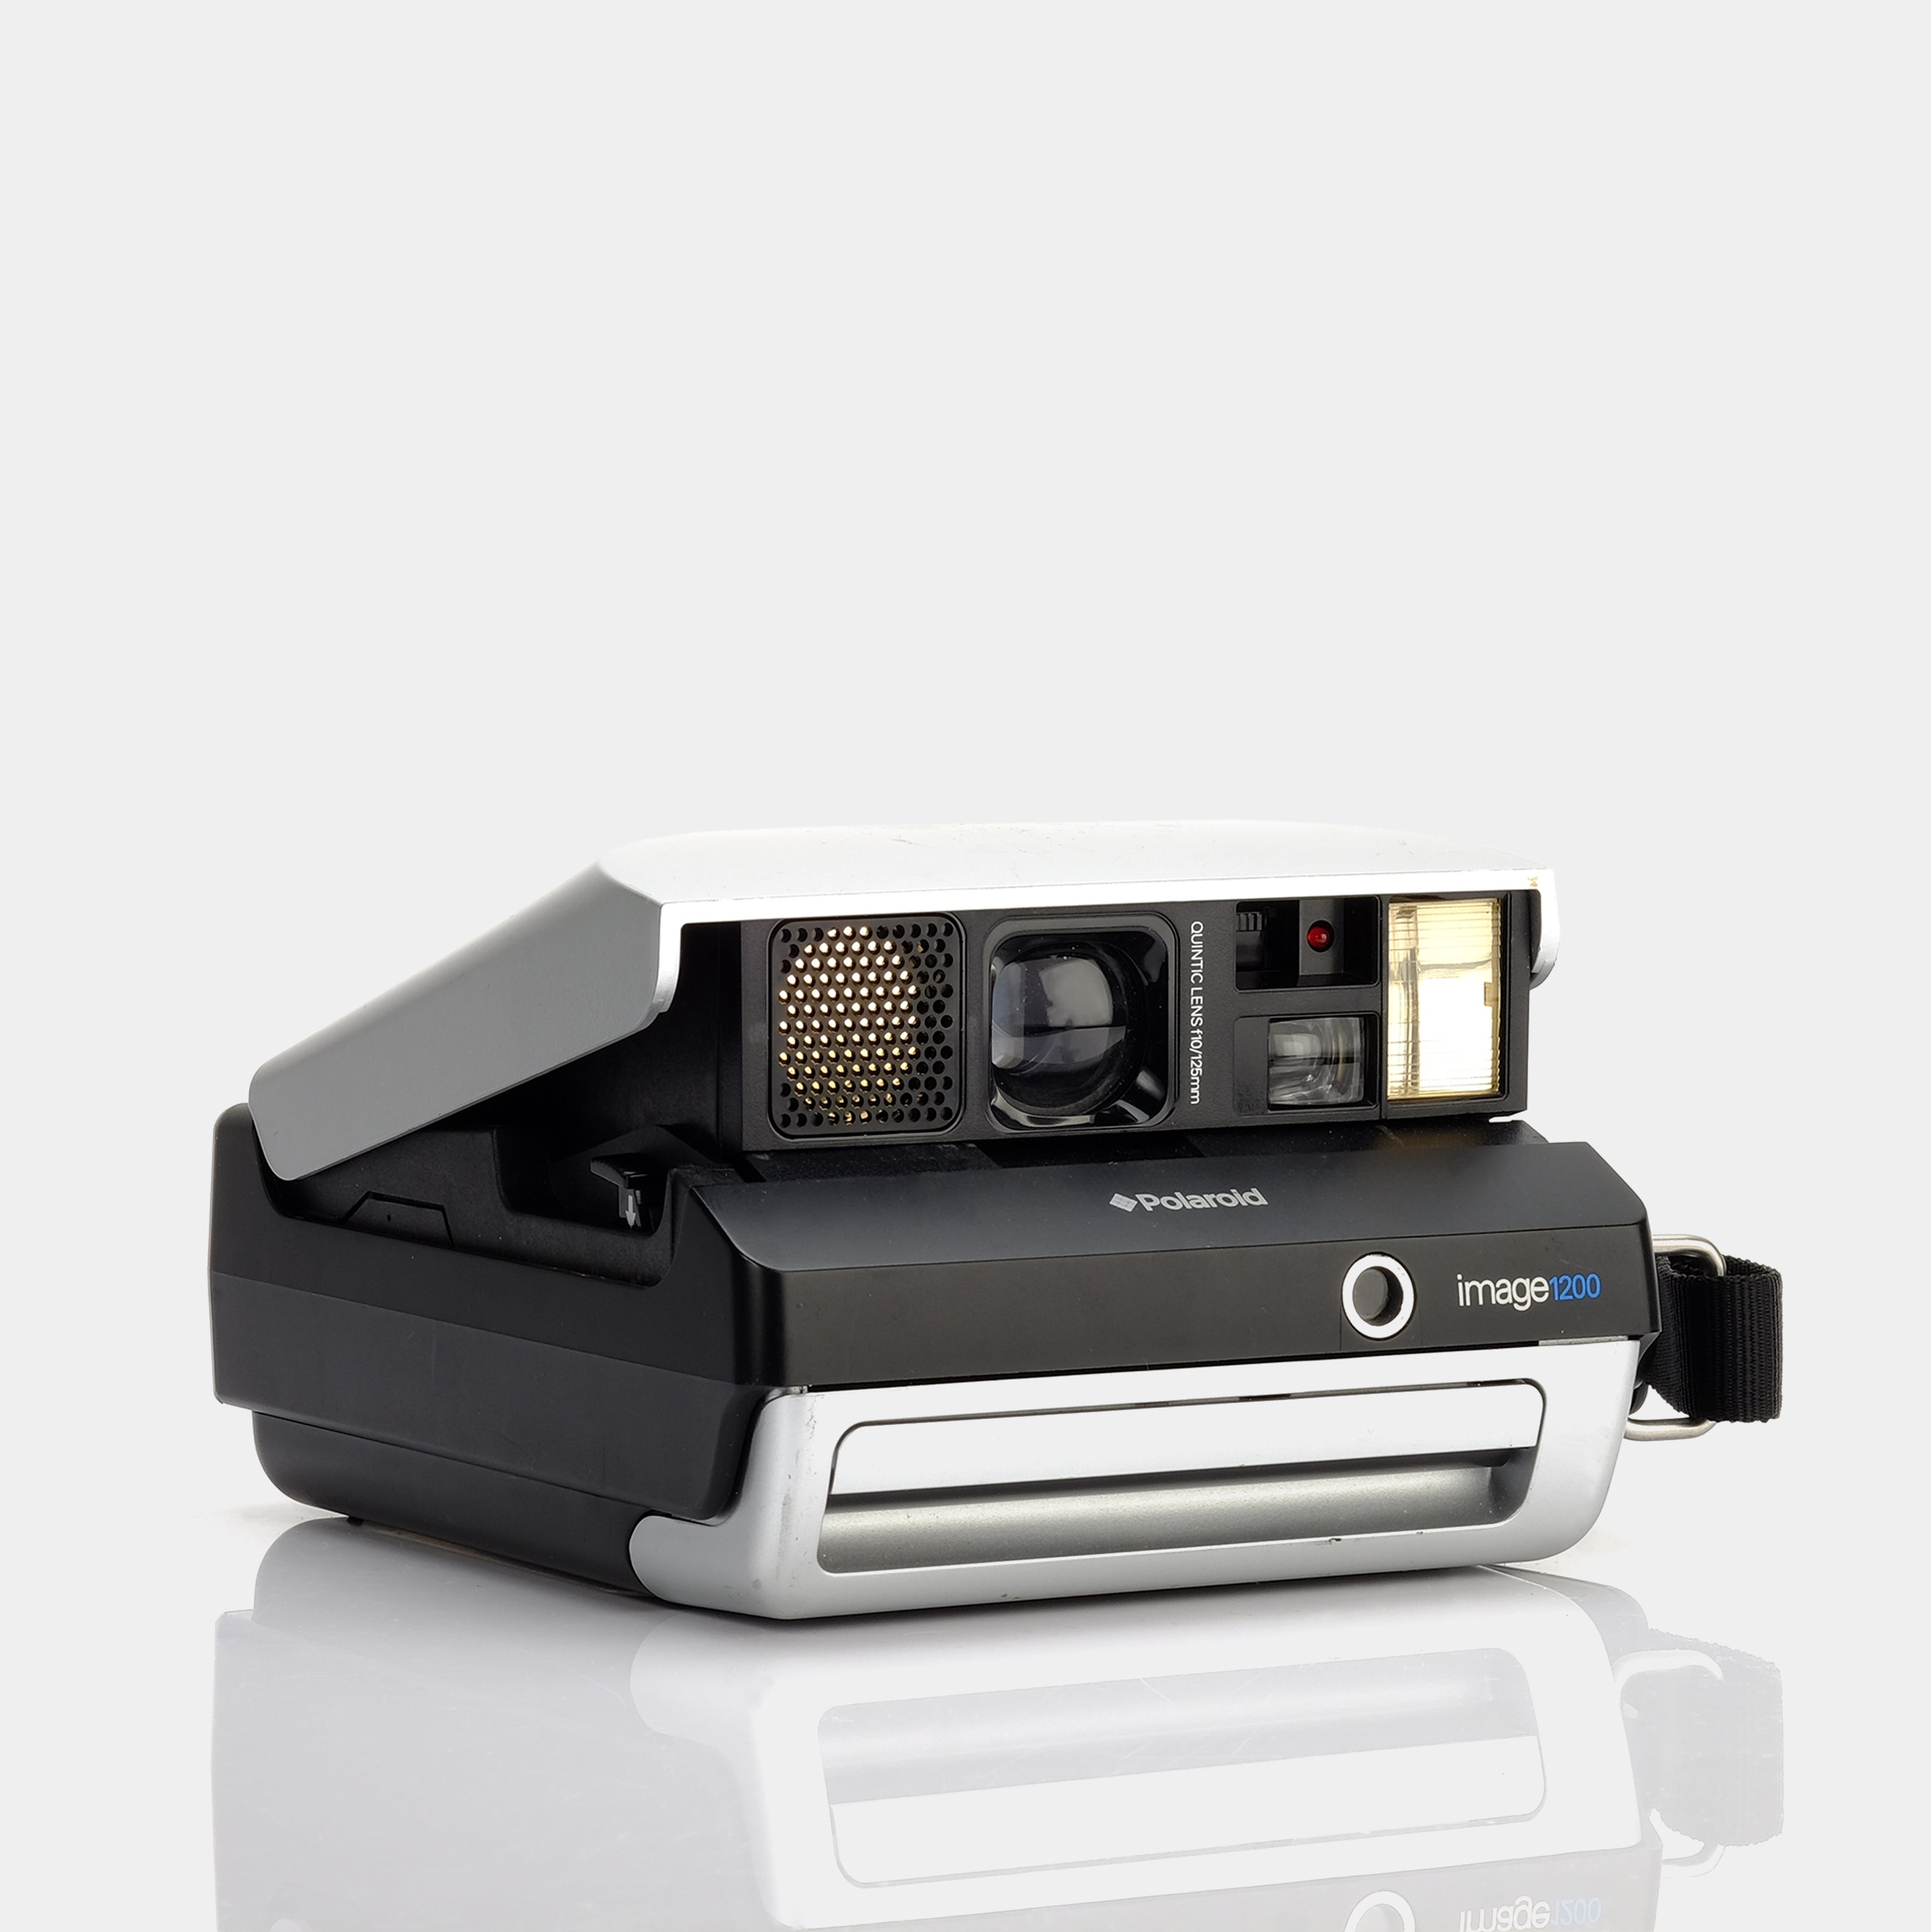 Polaroid Spectra Image 1200 Instant Film Camera